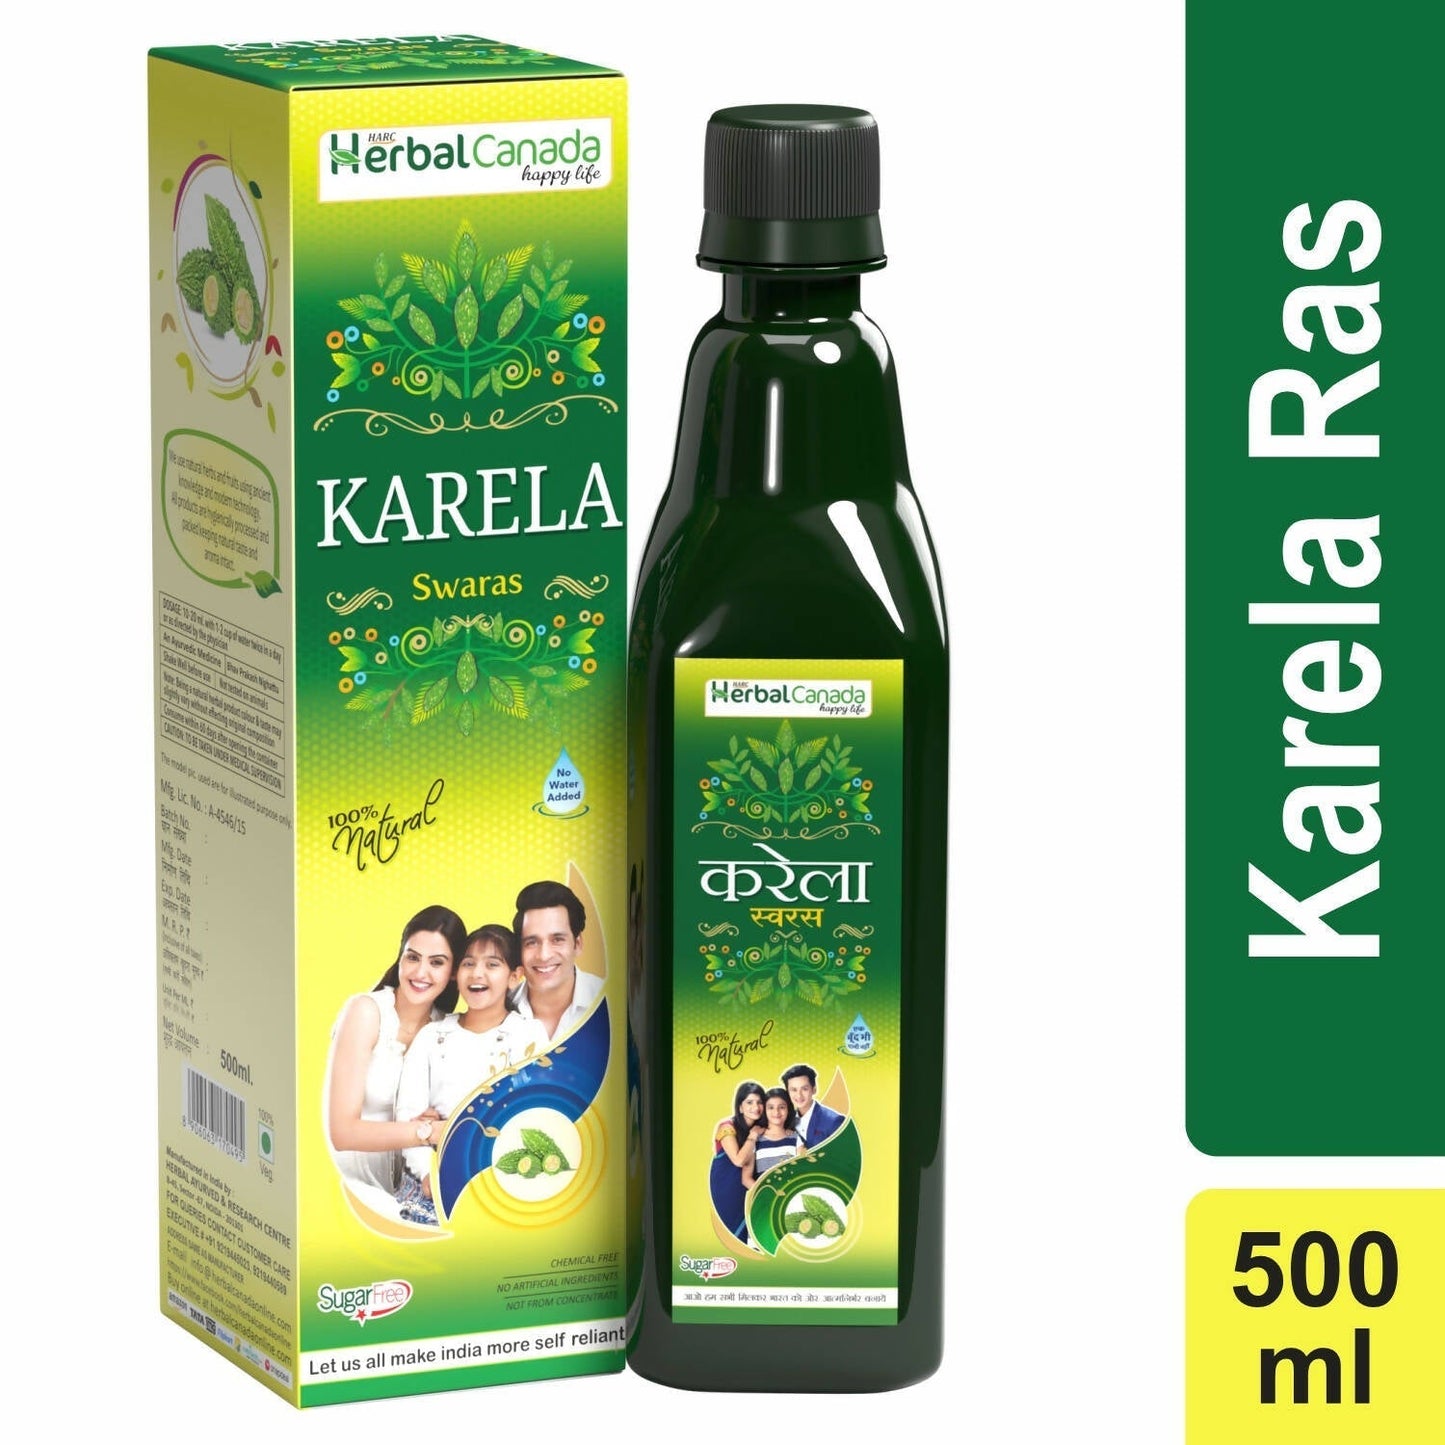 Herbal Canada Karela Ras